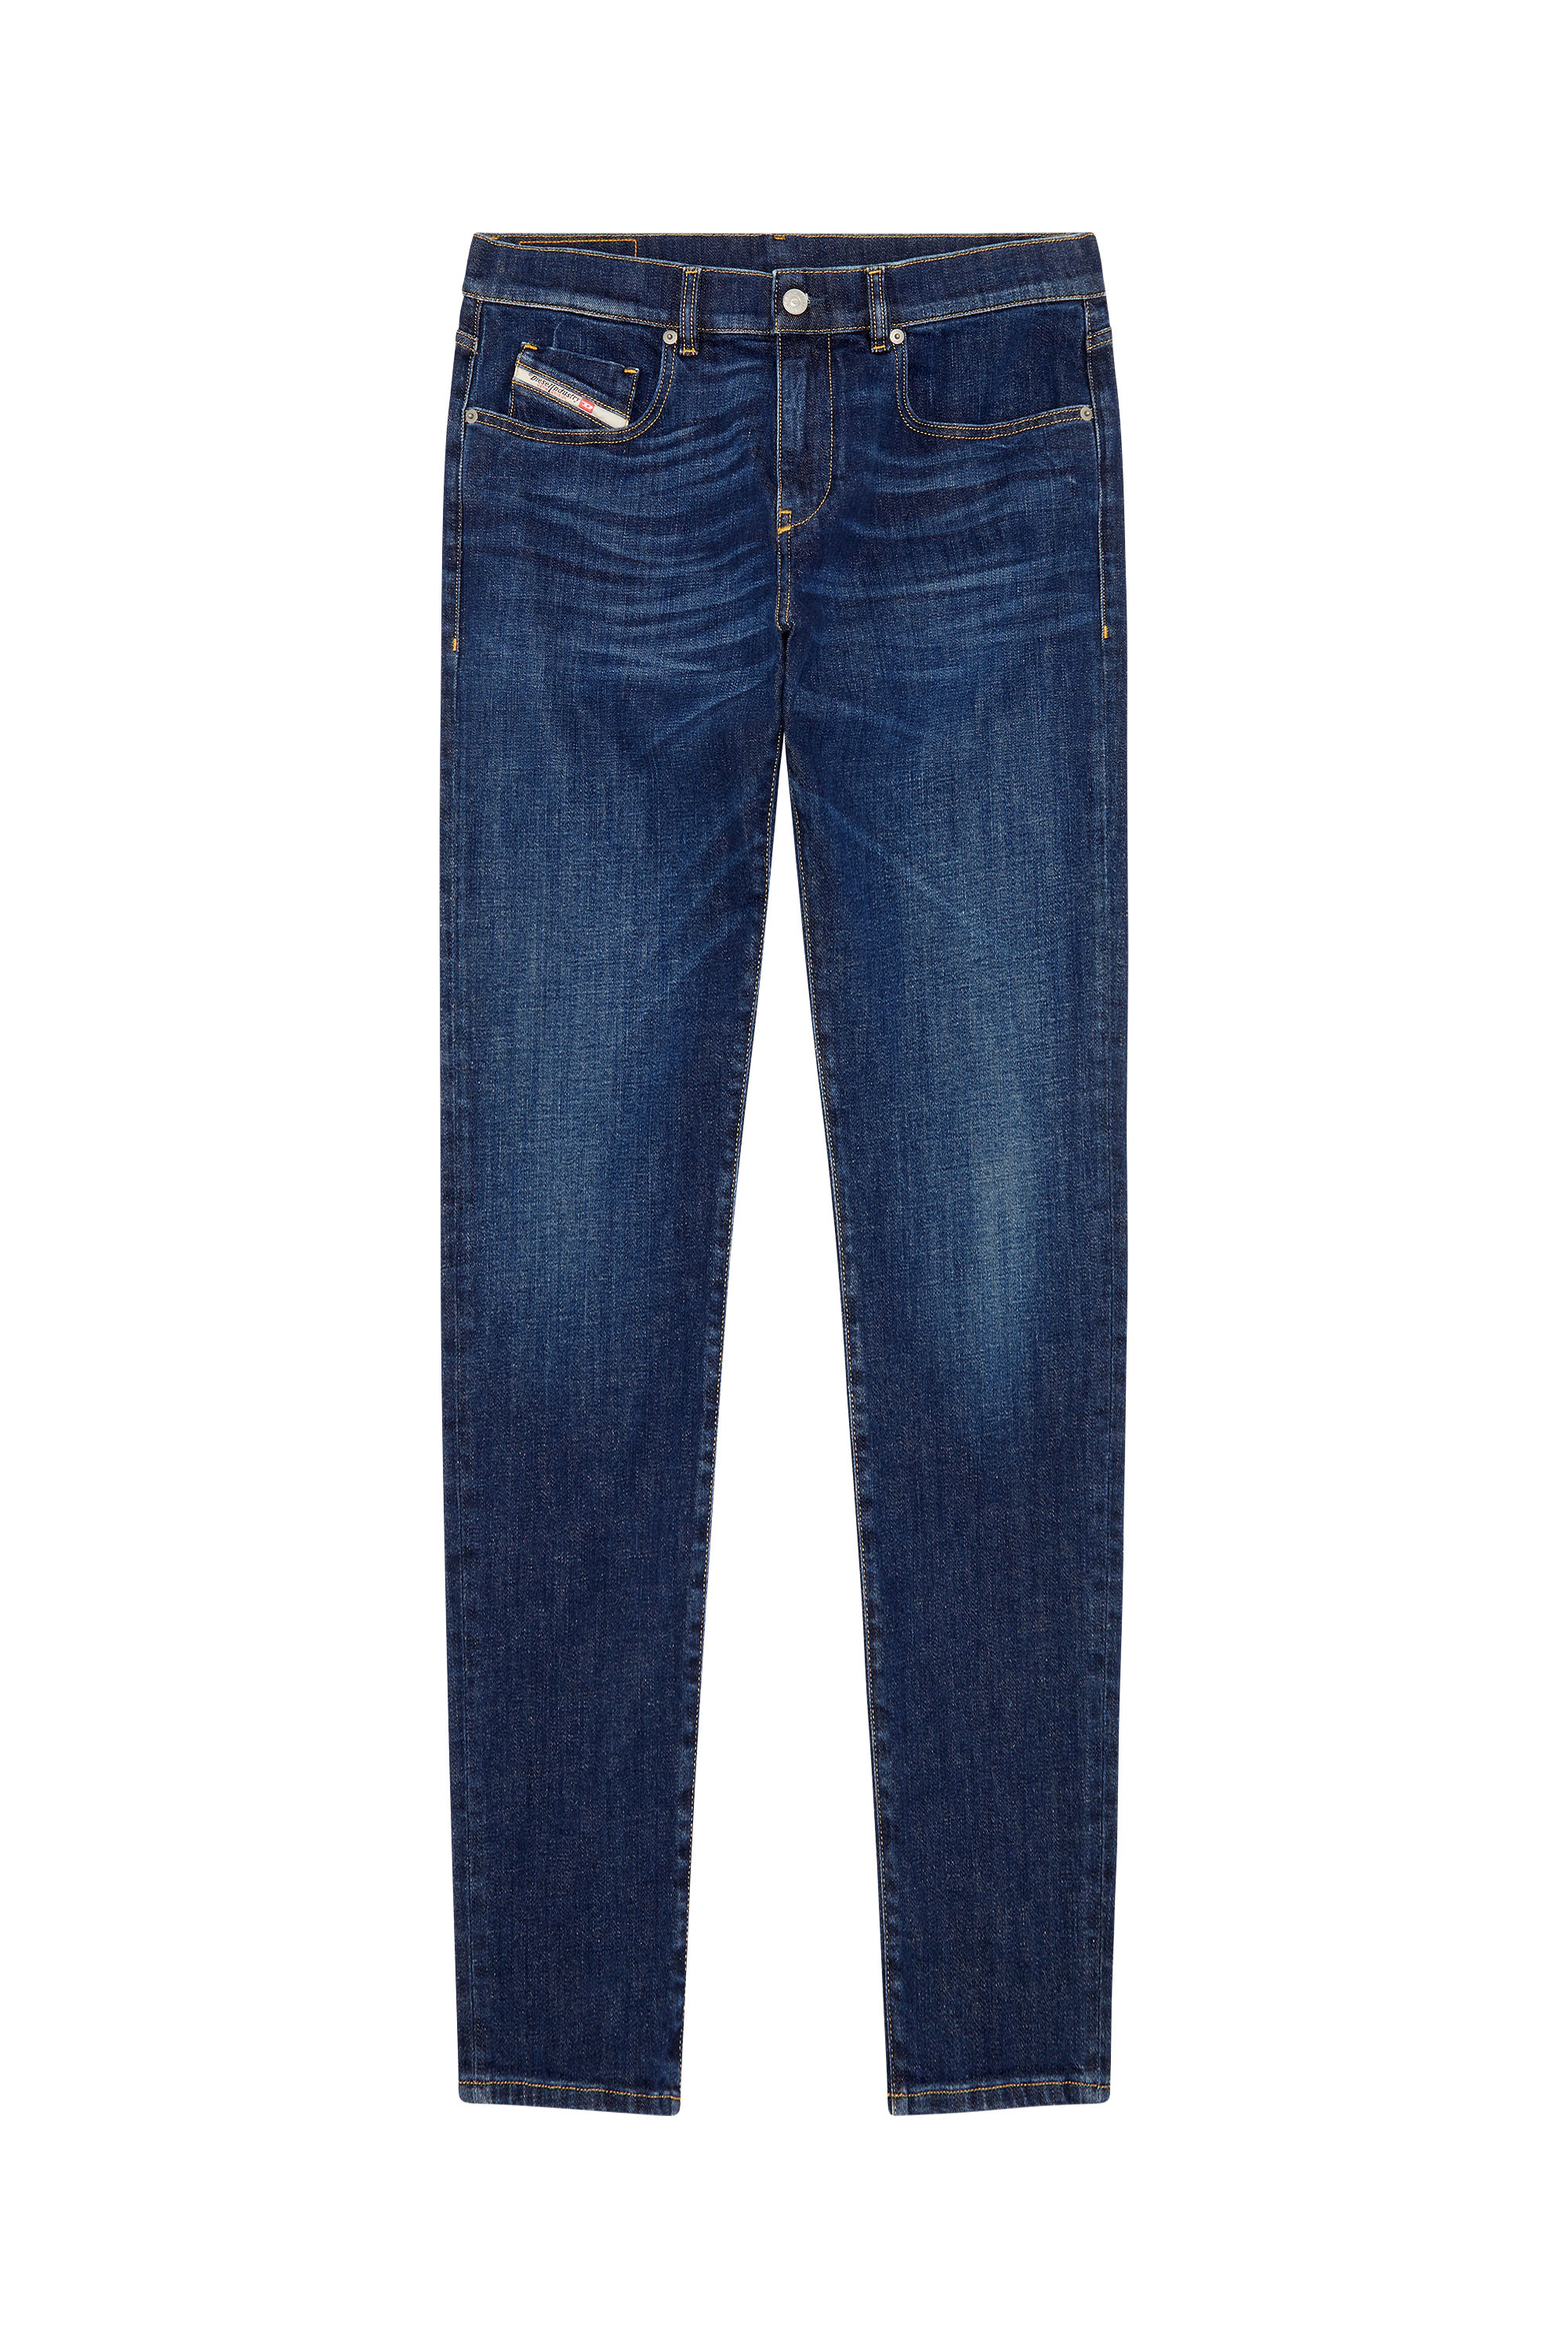 Diesel - Slim Jeans 2019 D-Strukt 09B90, Dark Blue - Image 3